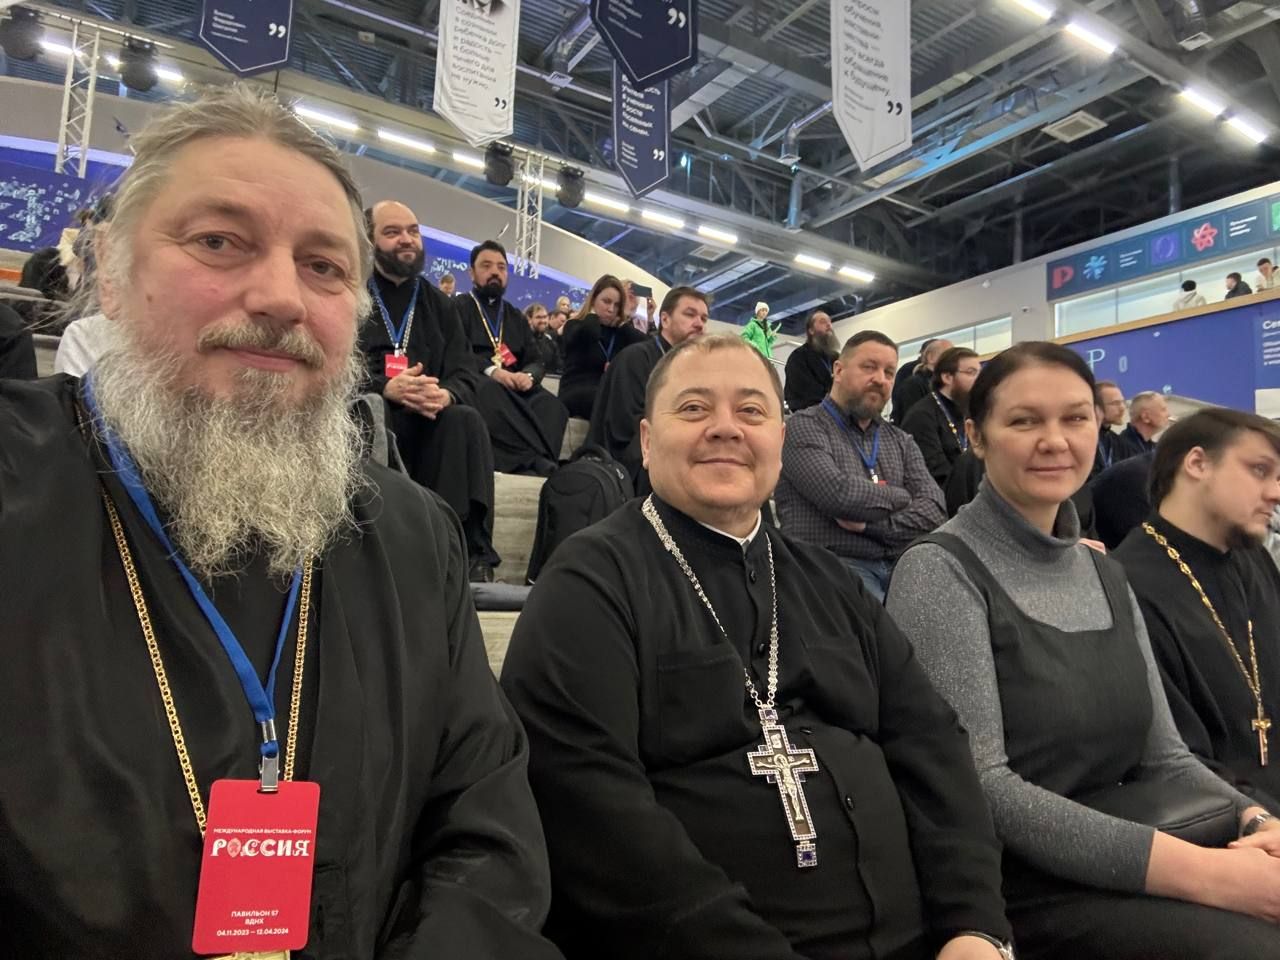 Делегаты от Владивостокской епархии приняли участие в совещании епархиальных древлехранителей, архитекторов и представителей епархиальных отделов культуры